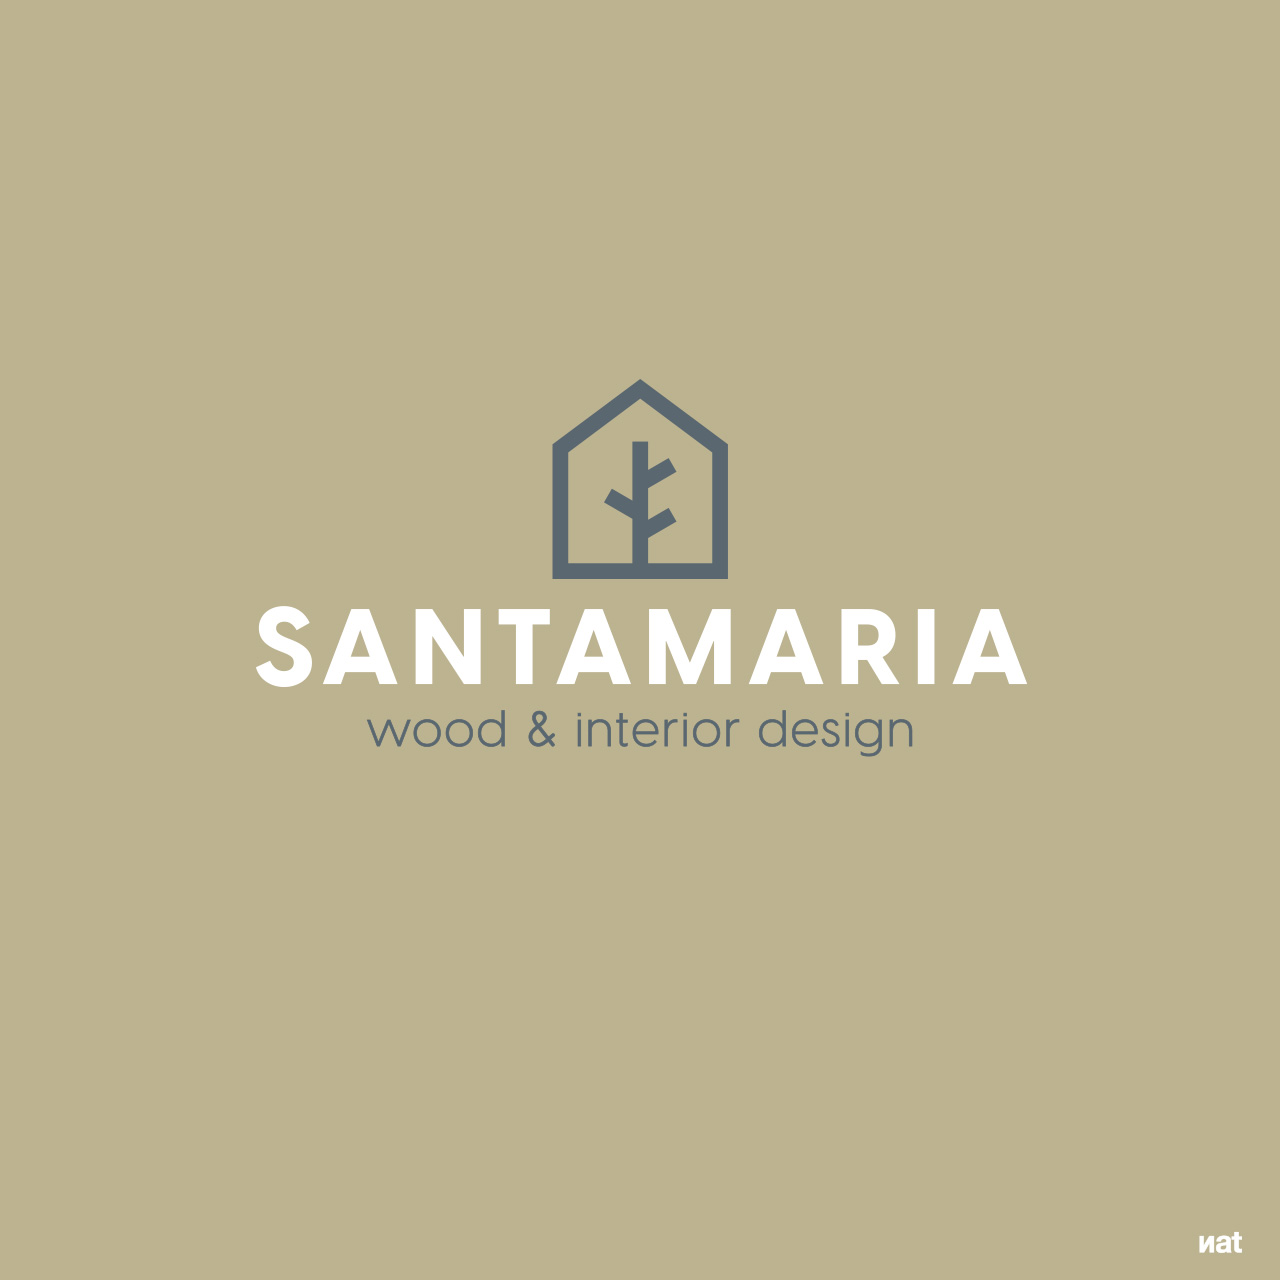 Diseño de imagen corporativa para la marca Santamaria. Nat Estudi.